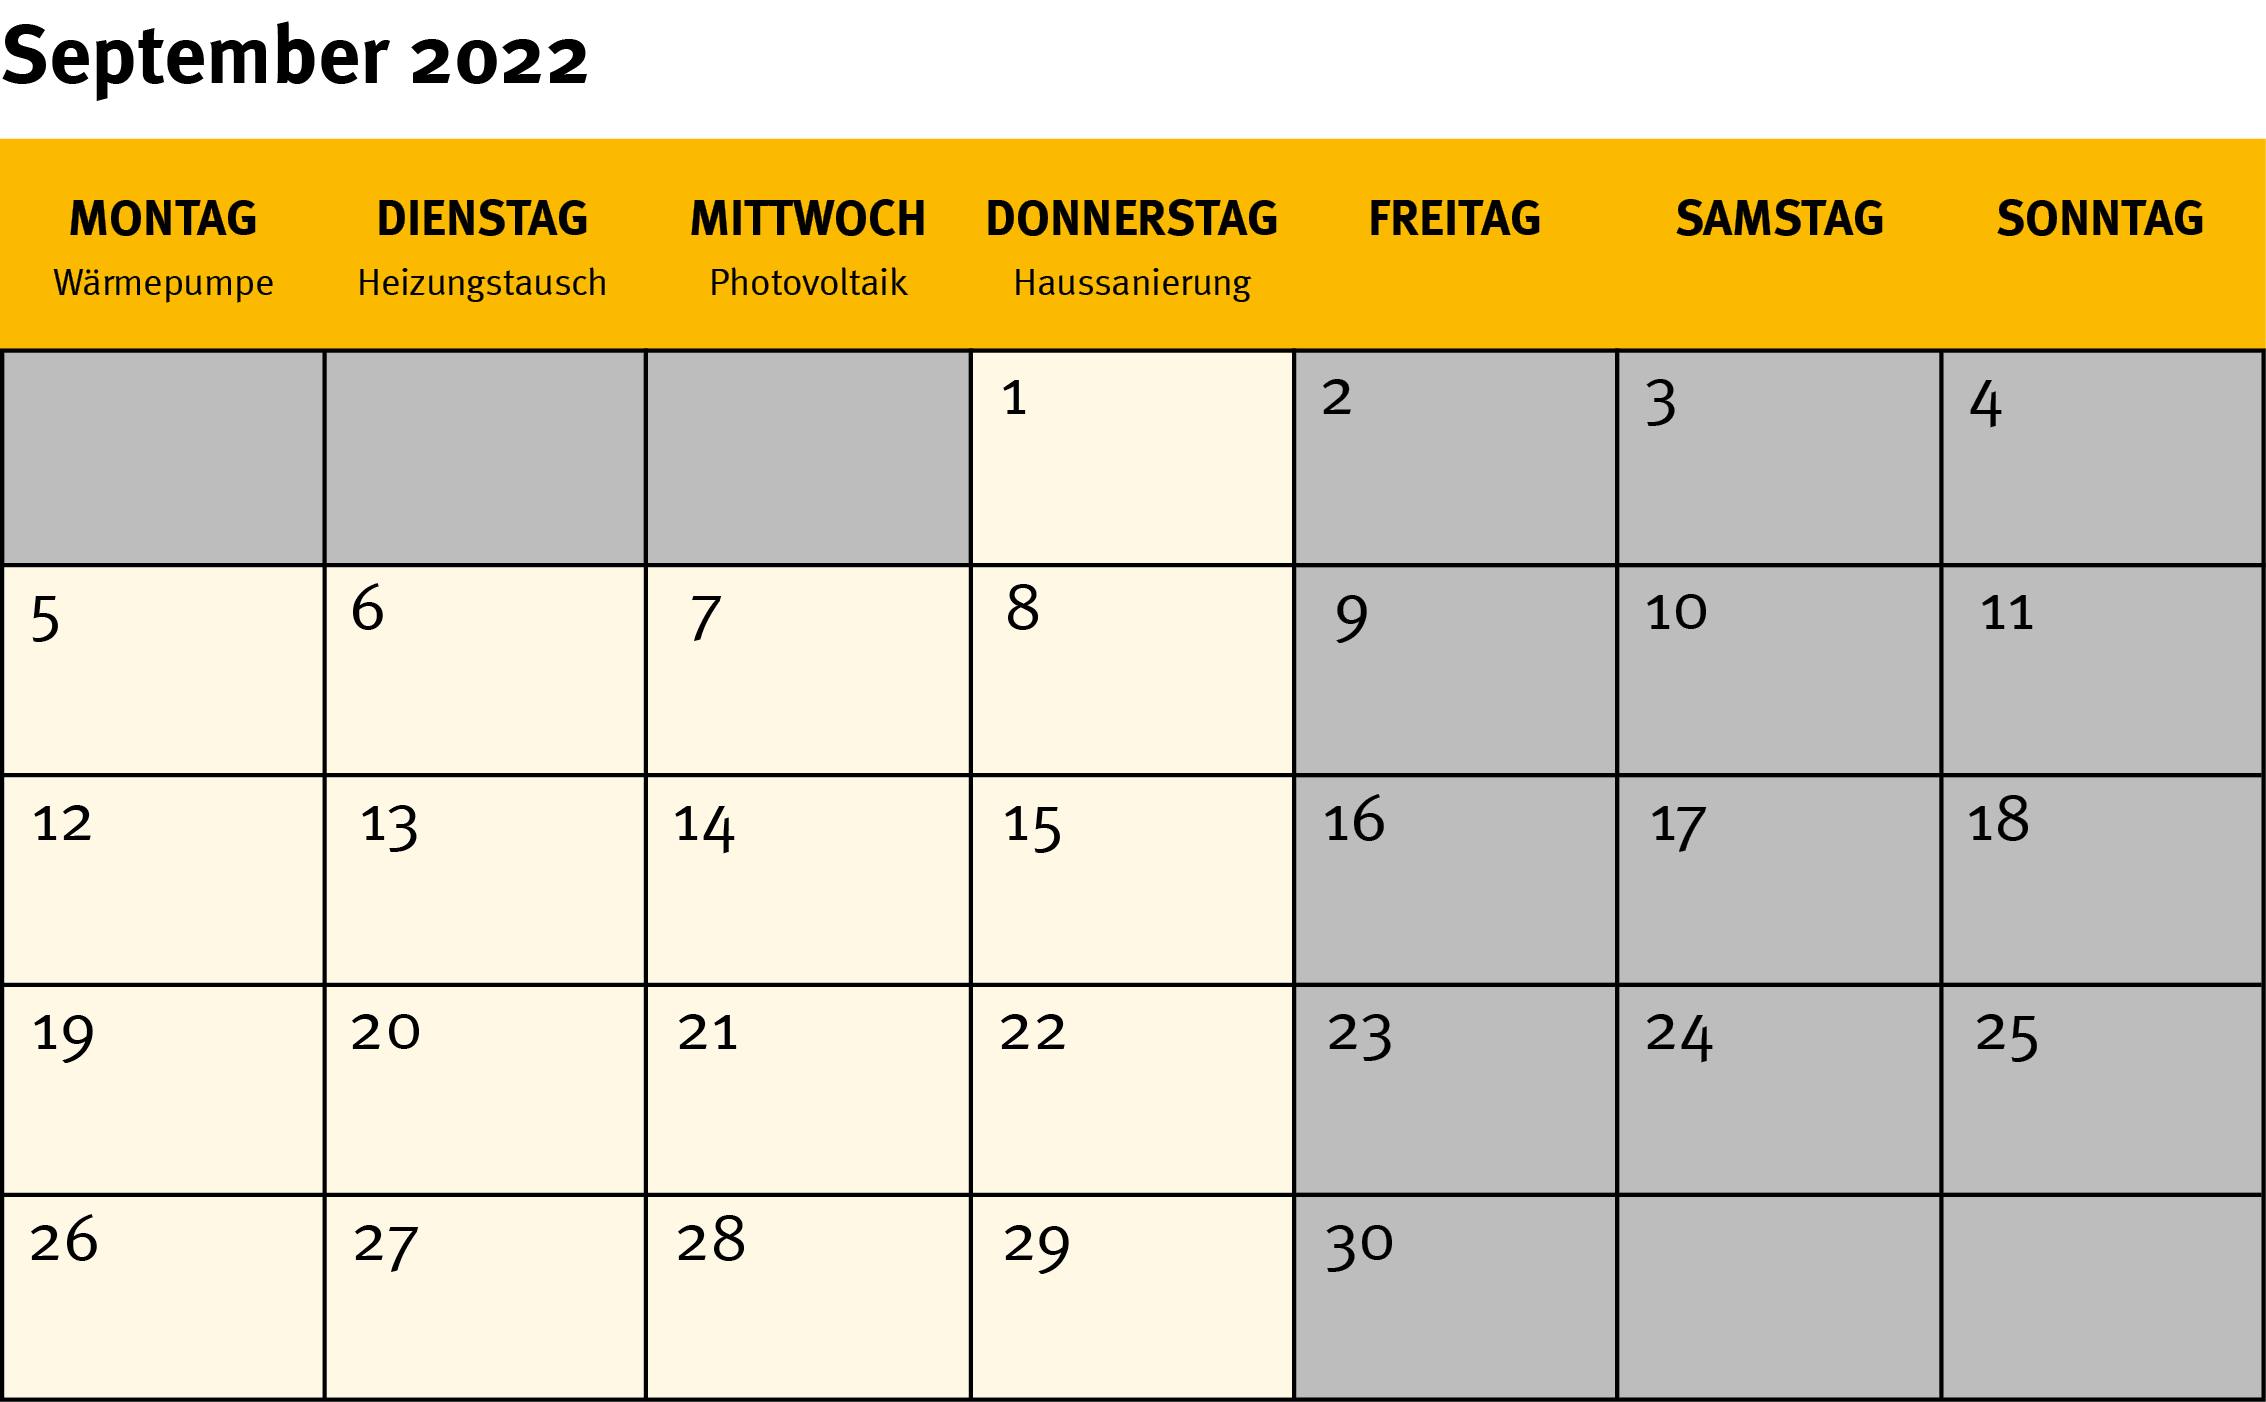 Die Grafik zeigt ein Kalenderblatt für den Monat September 2022.